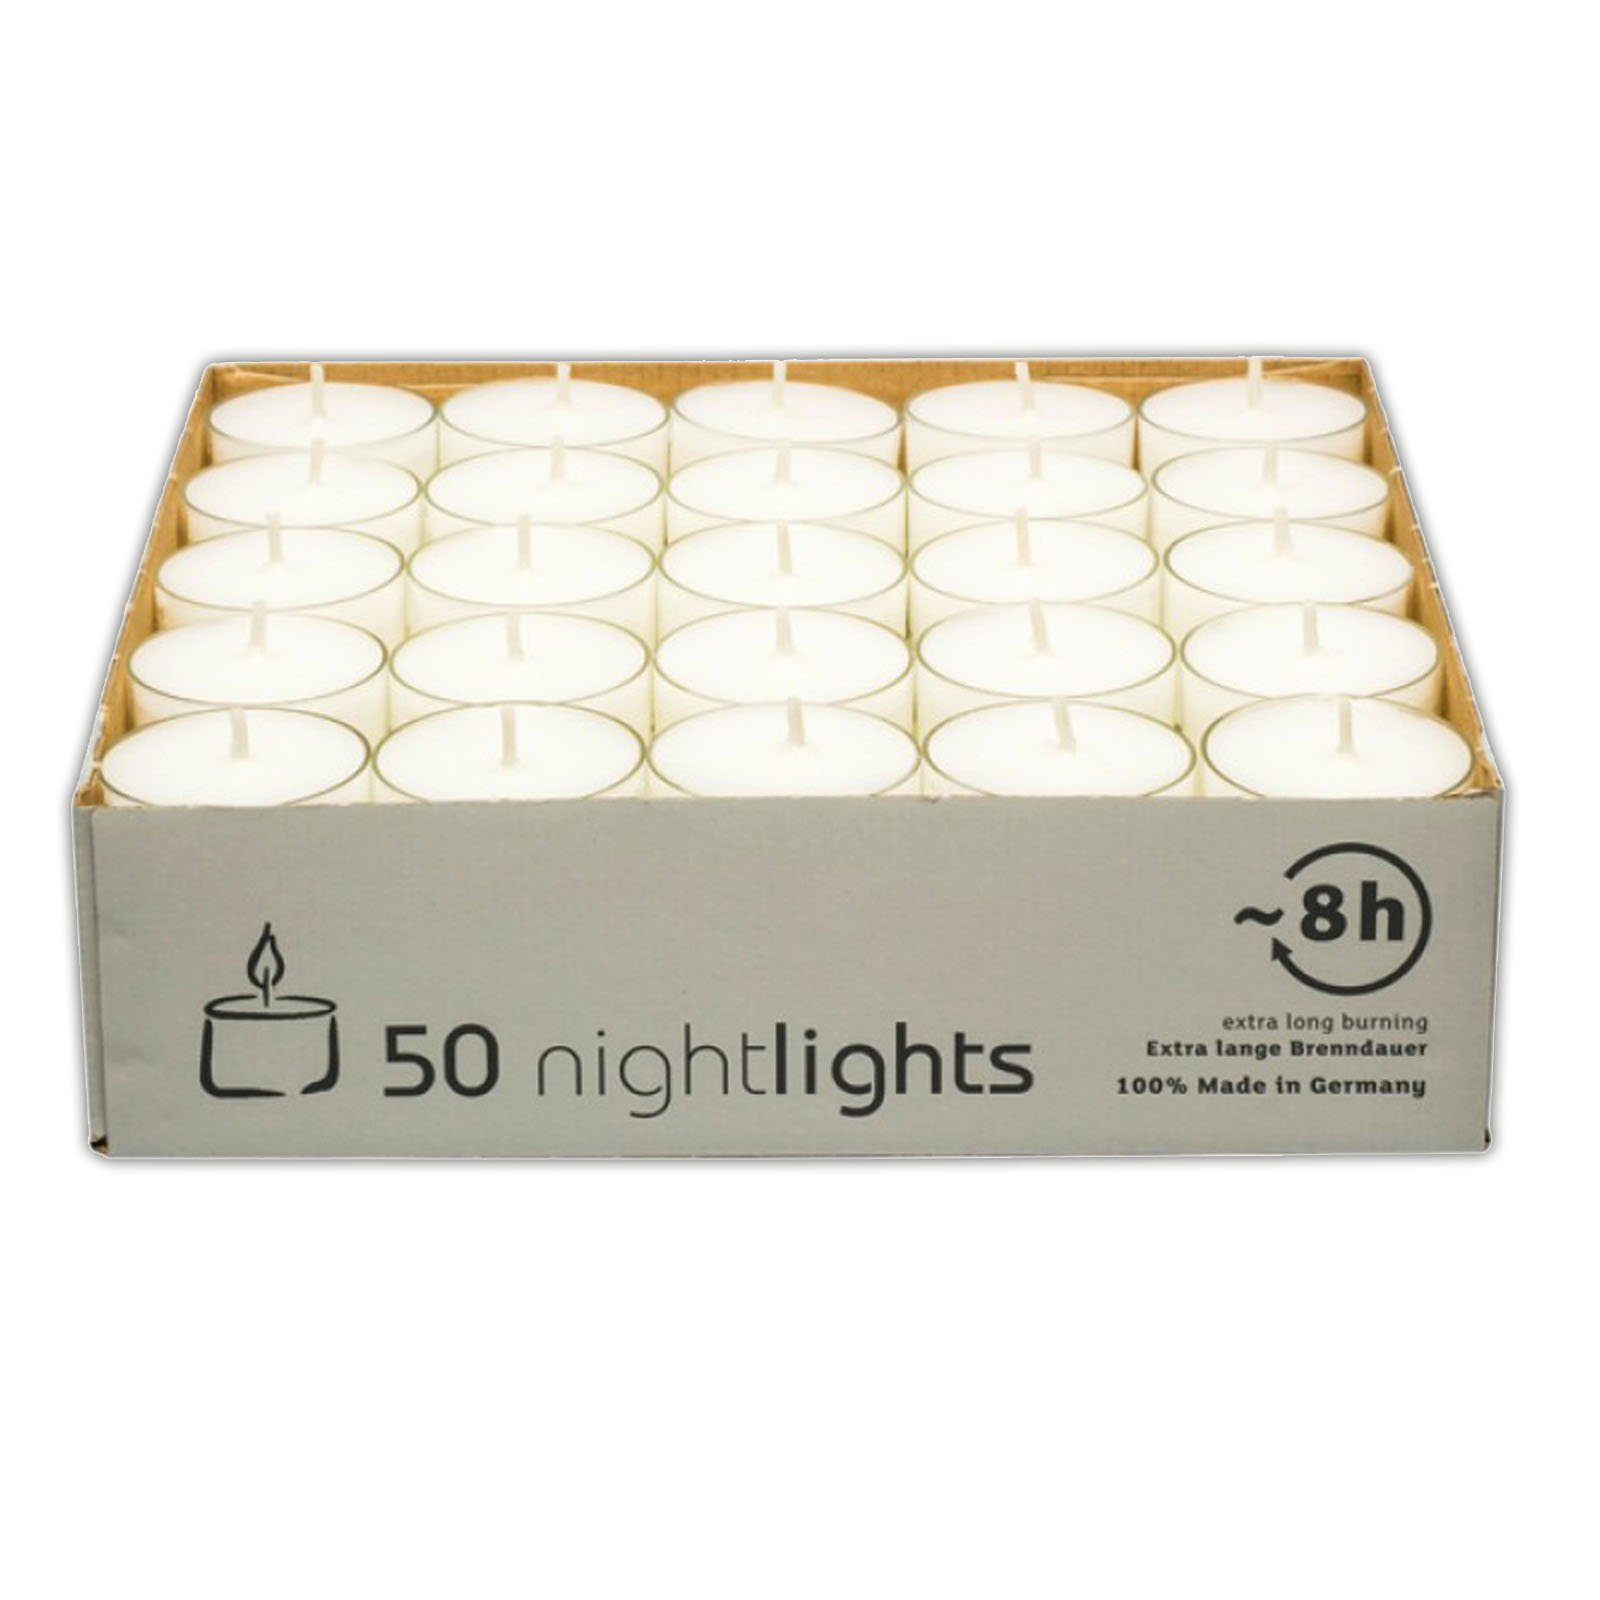 50 Stück Teelichter weiß 8 Stunden Brenndauer | Kerze Windlicht | Nightlights_Kerze